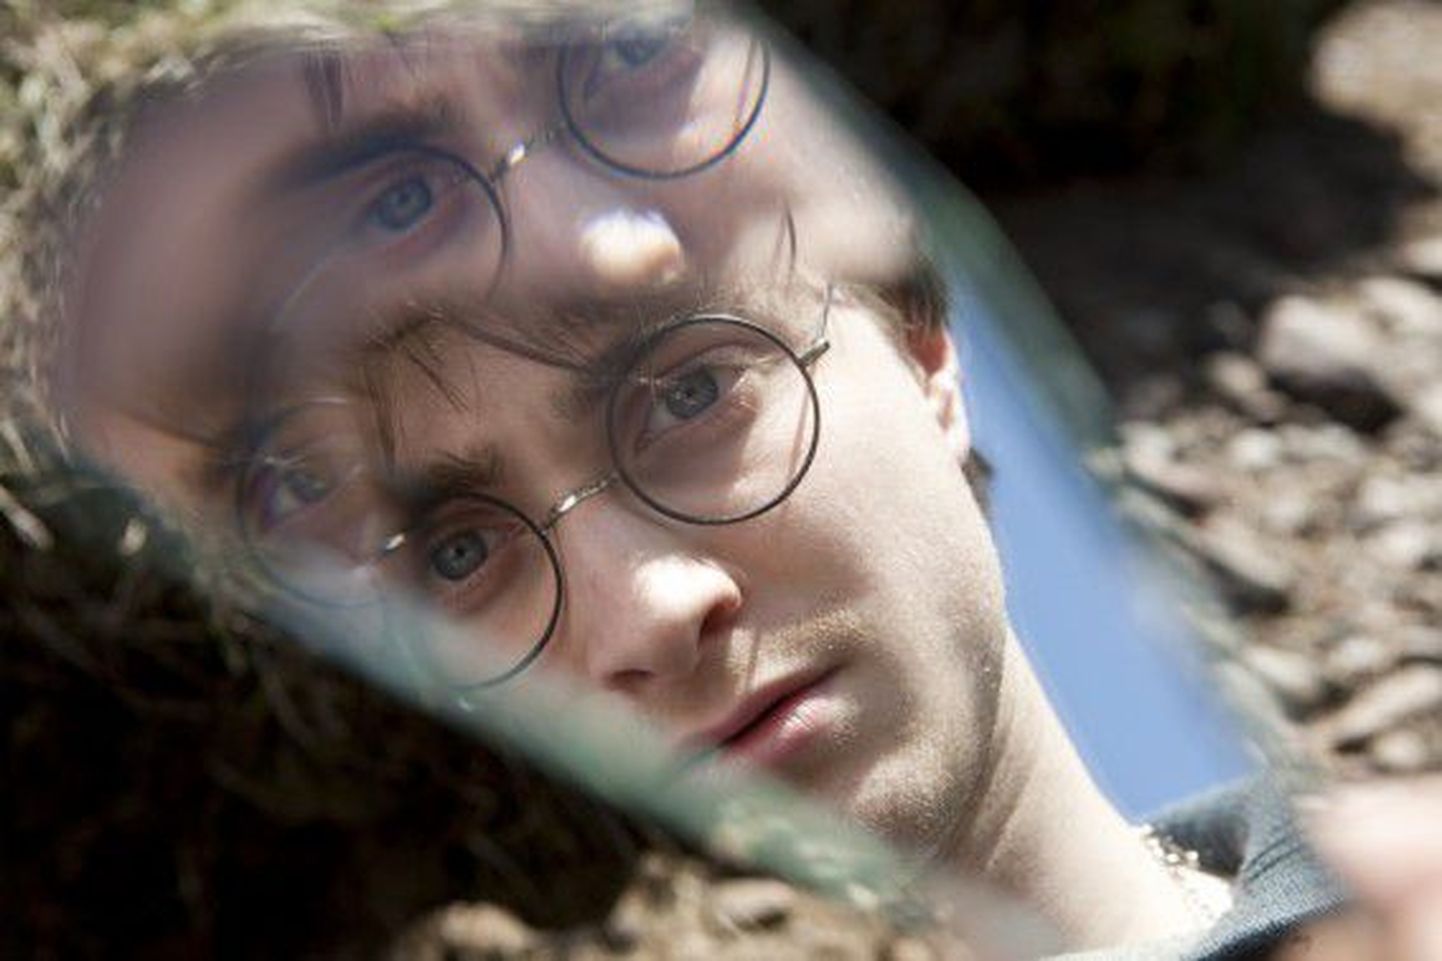 "Just filmi" juhatab sisse Harry Potteri saaga seitsmenda loo “Harry Potter ja surma vägised” esimene osa.